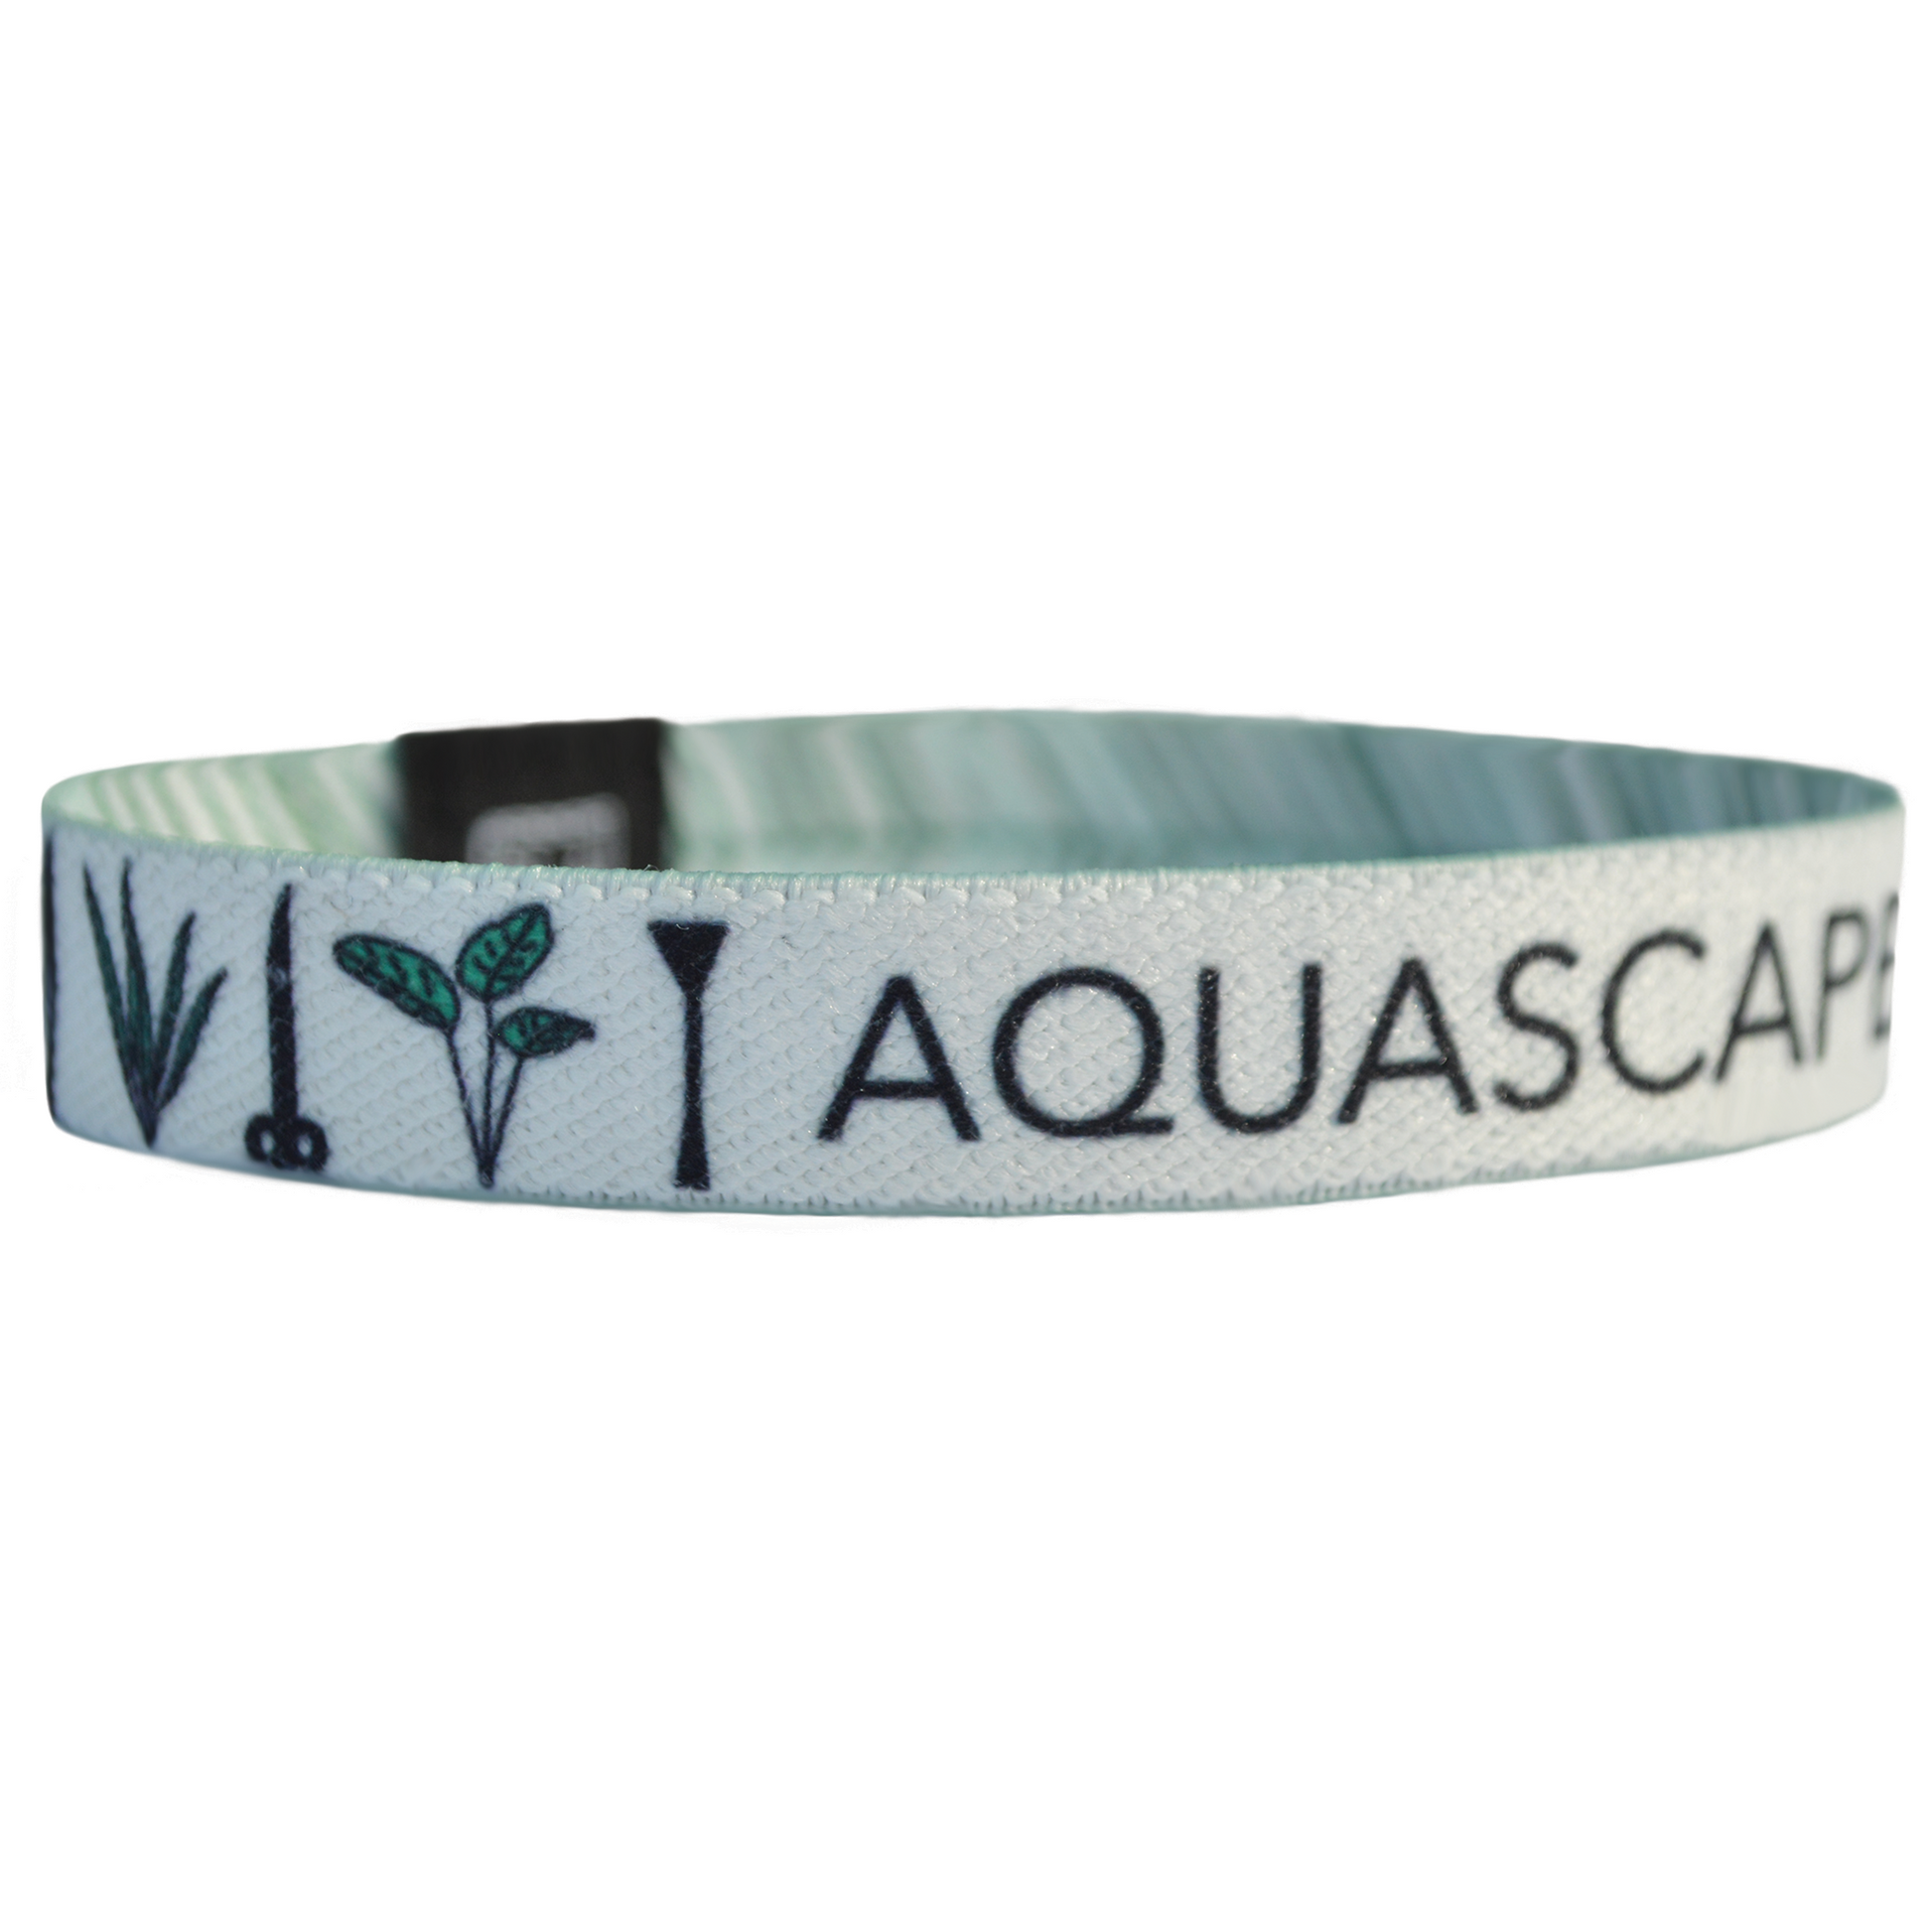 Tank Life Apparel Aquascaper bracelet featuring aquascaping tools and plants.